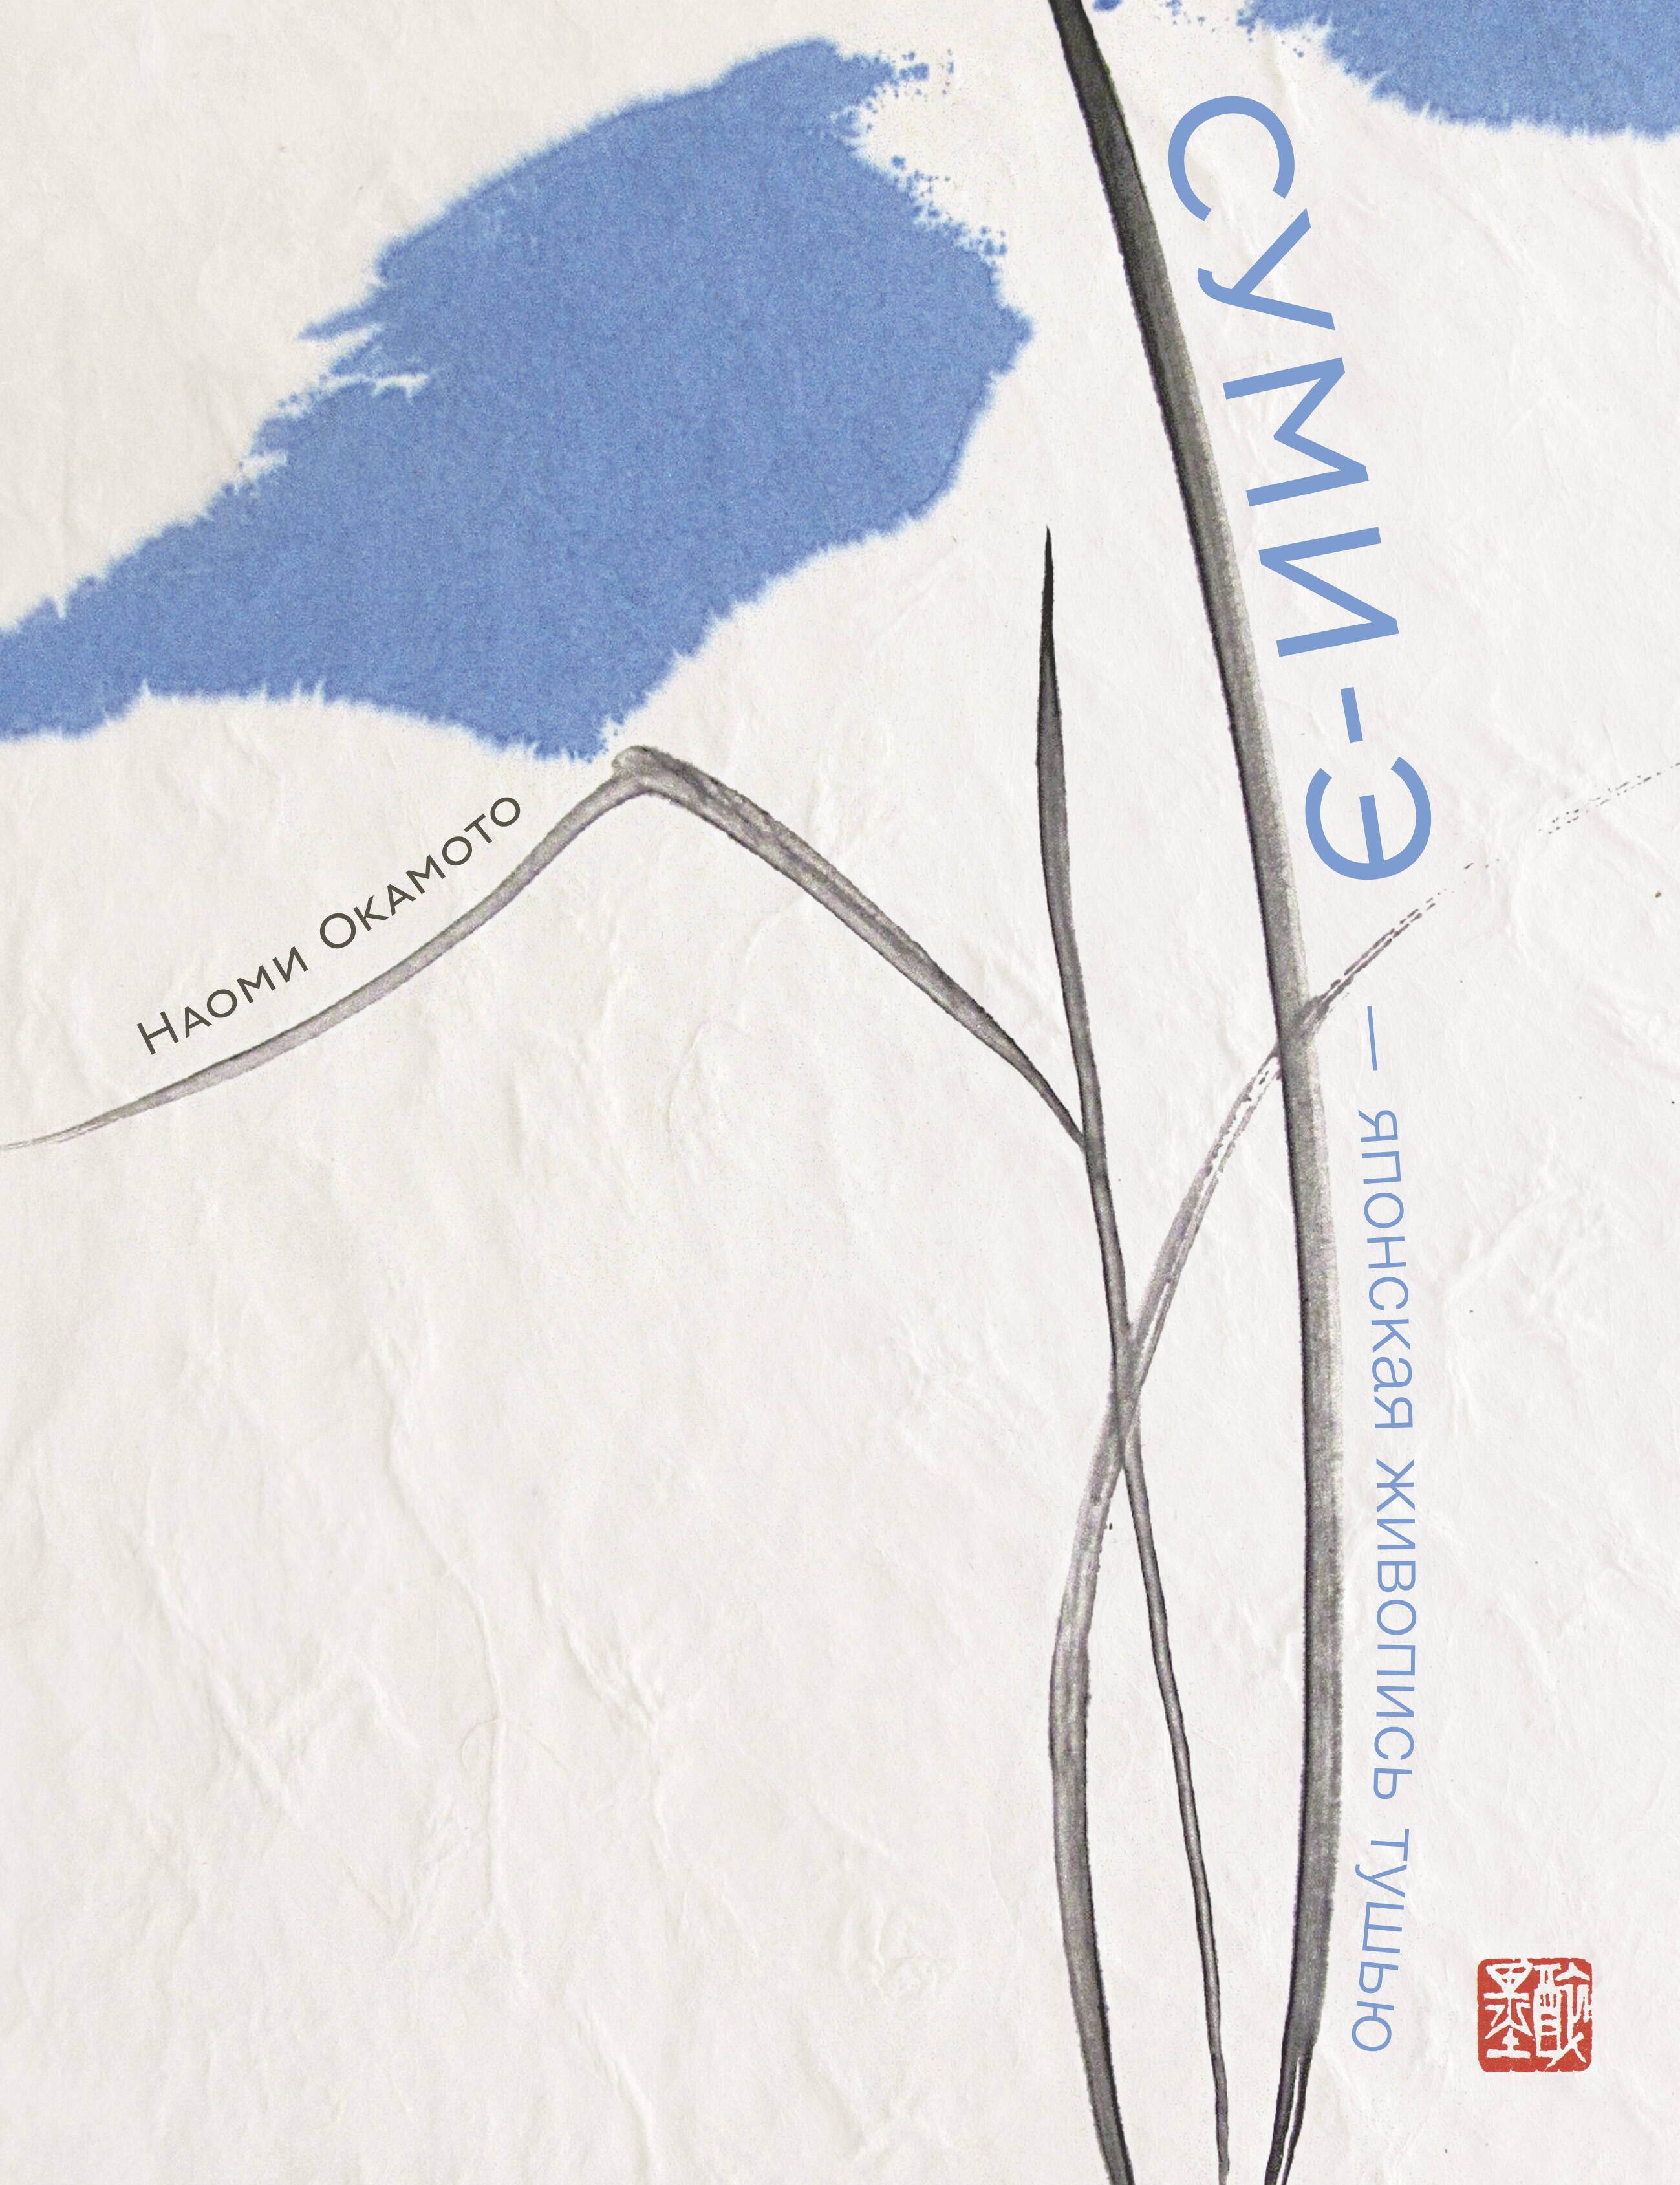 фрэйм сьюзан живопись суми э художественное пособие для начинающих Окамото Наоми Суми-э - японская живопись тушью